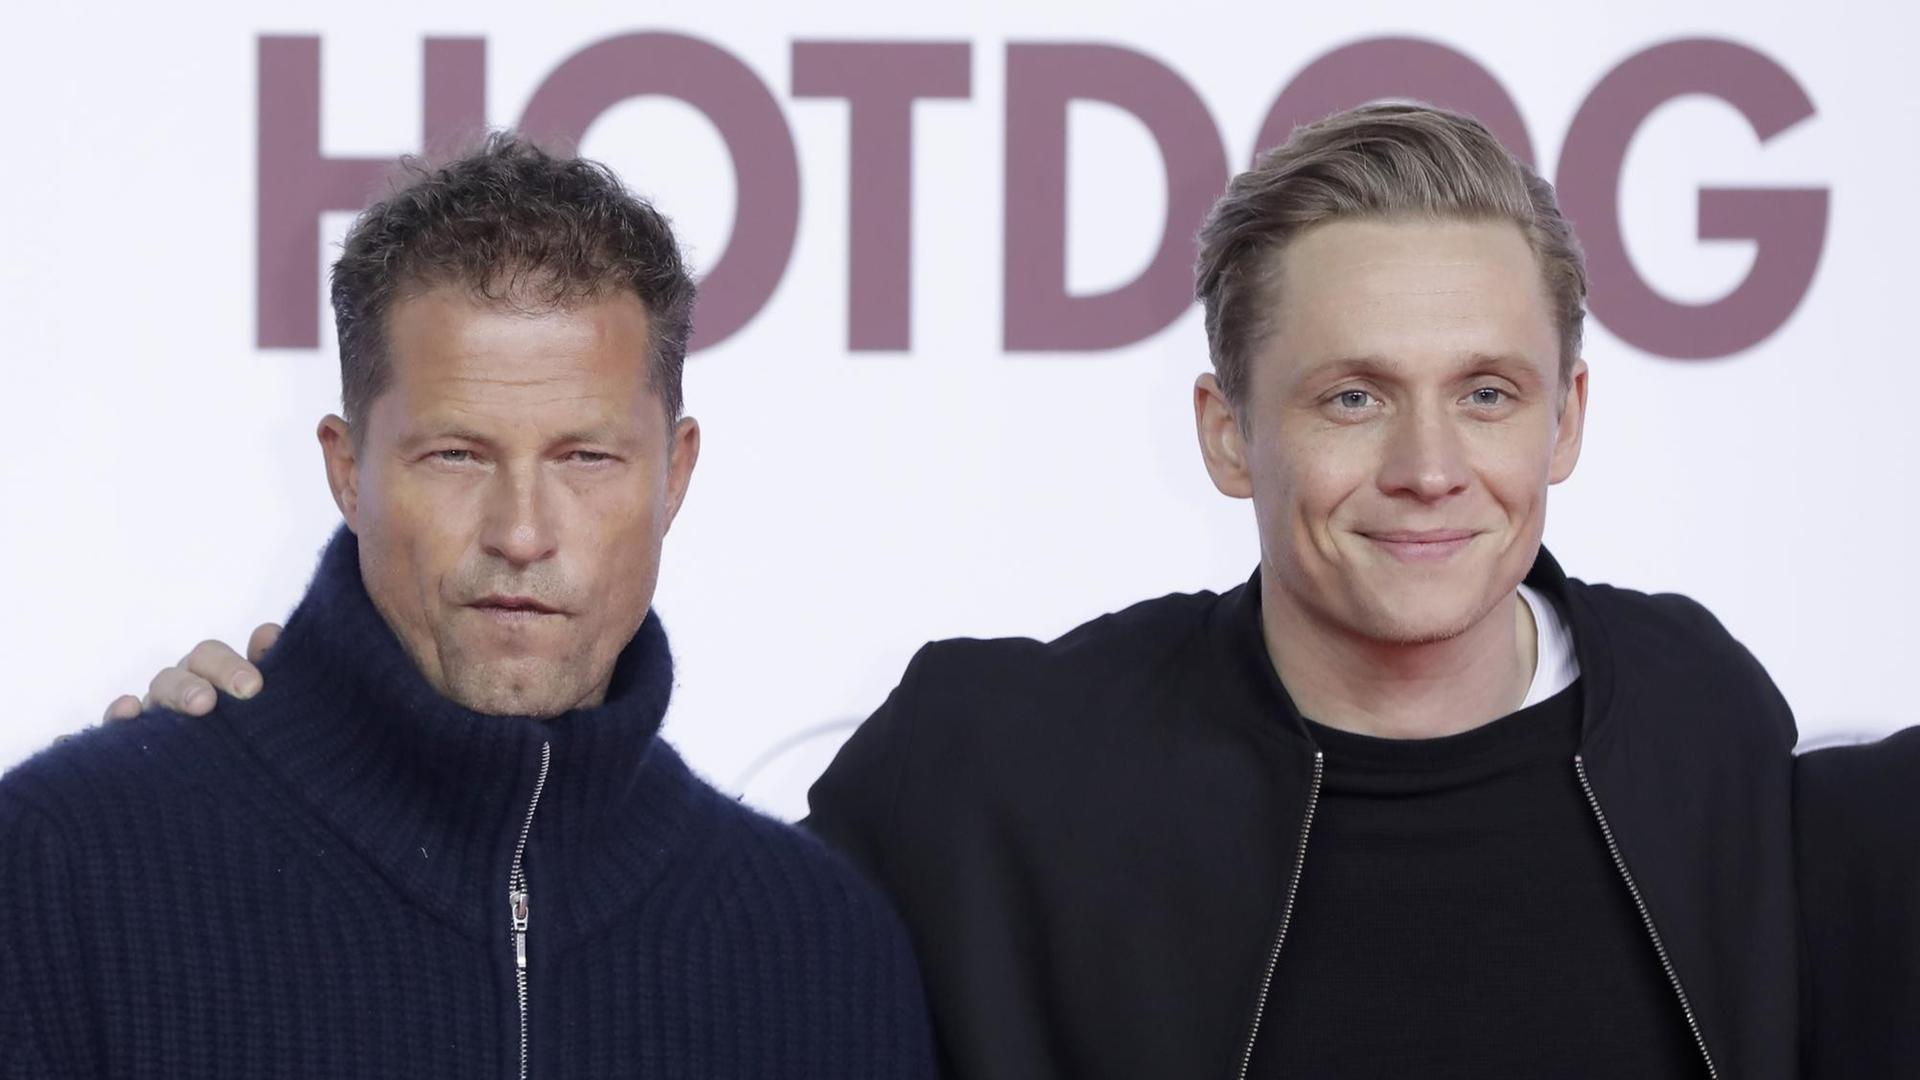 Die Schauspieler Til Schweiger (l) und Matthias Schweighöfer bei der Premiere ihrer Komödie "Hot Dog"